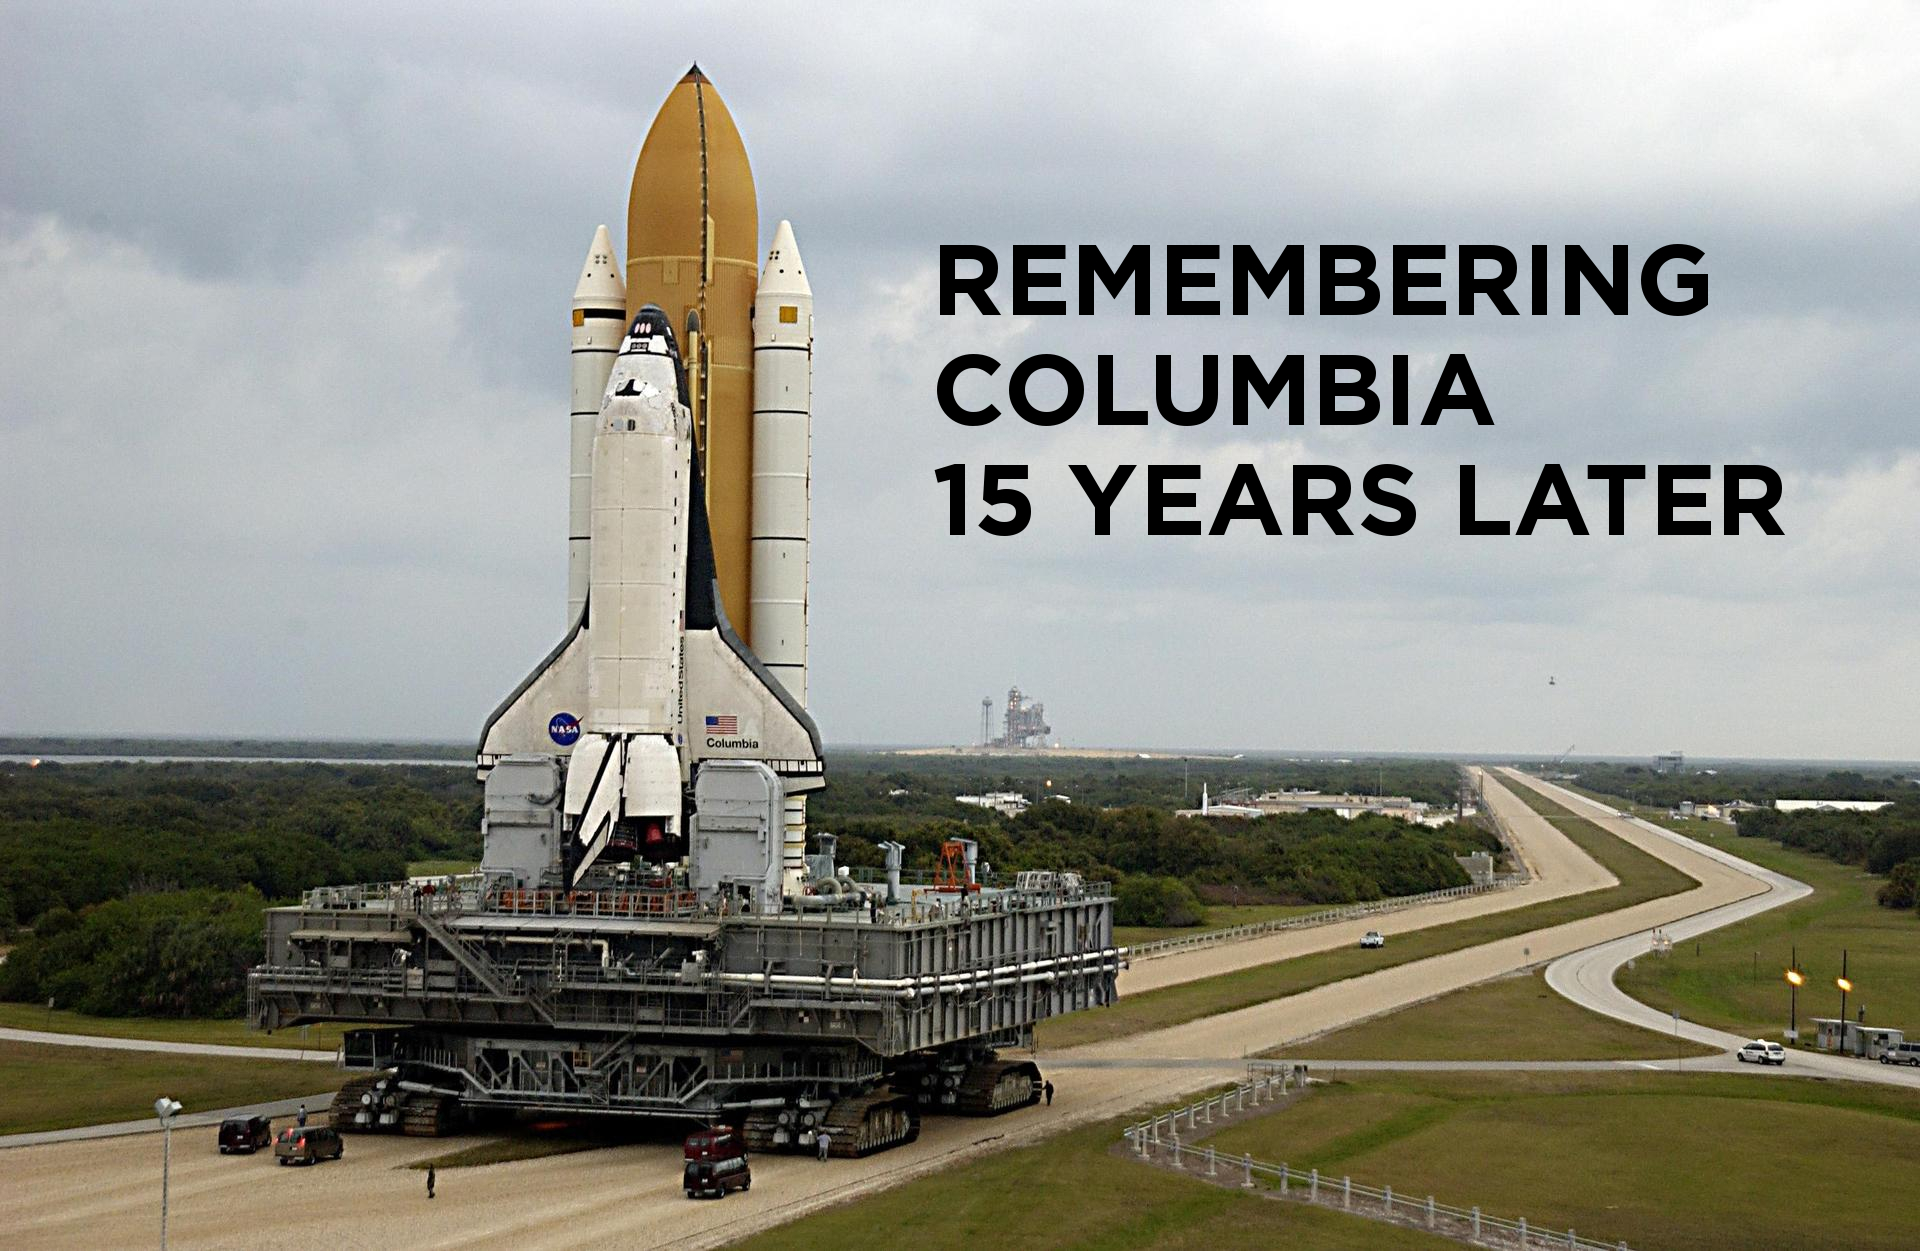 Remembering Columbia